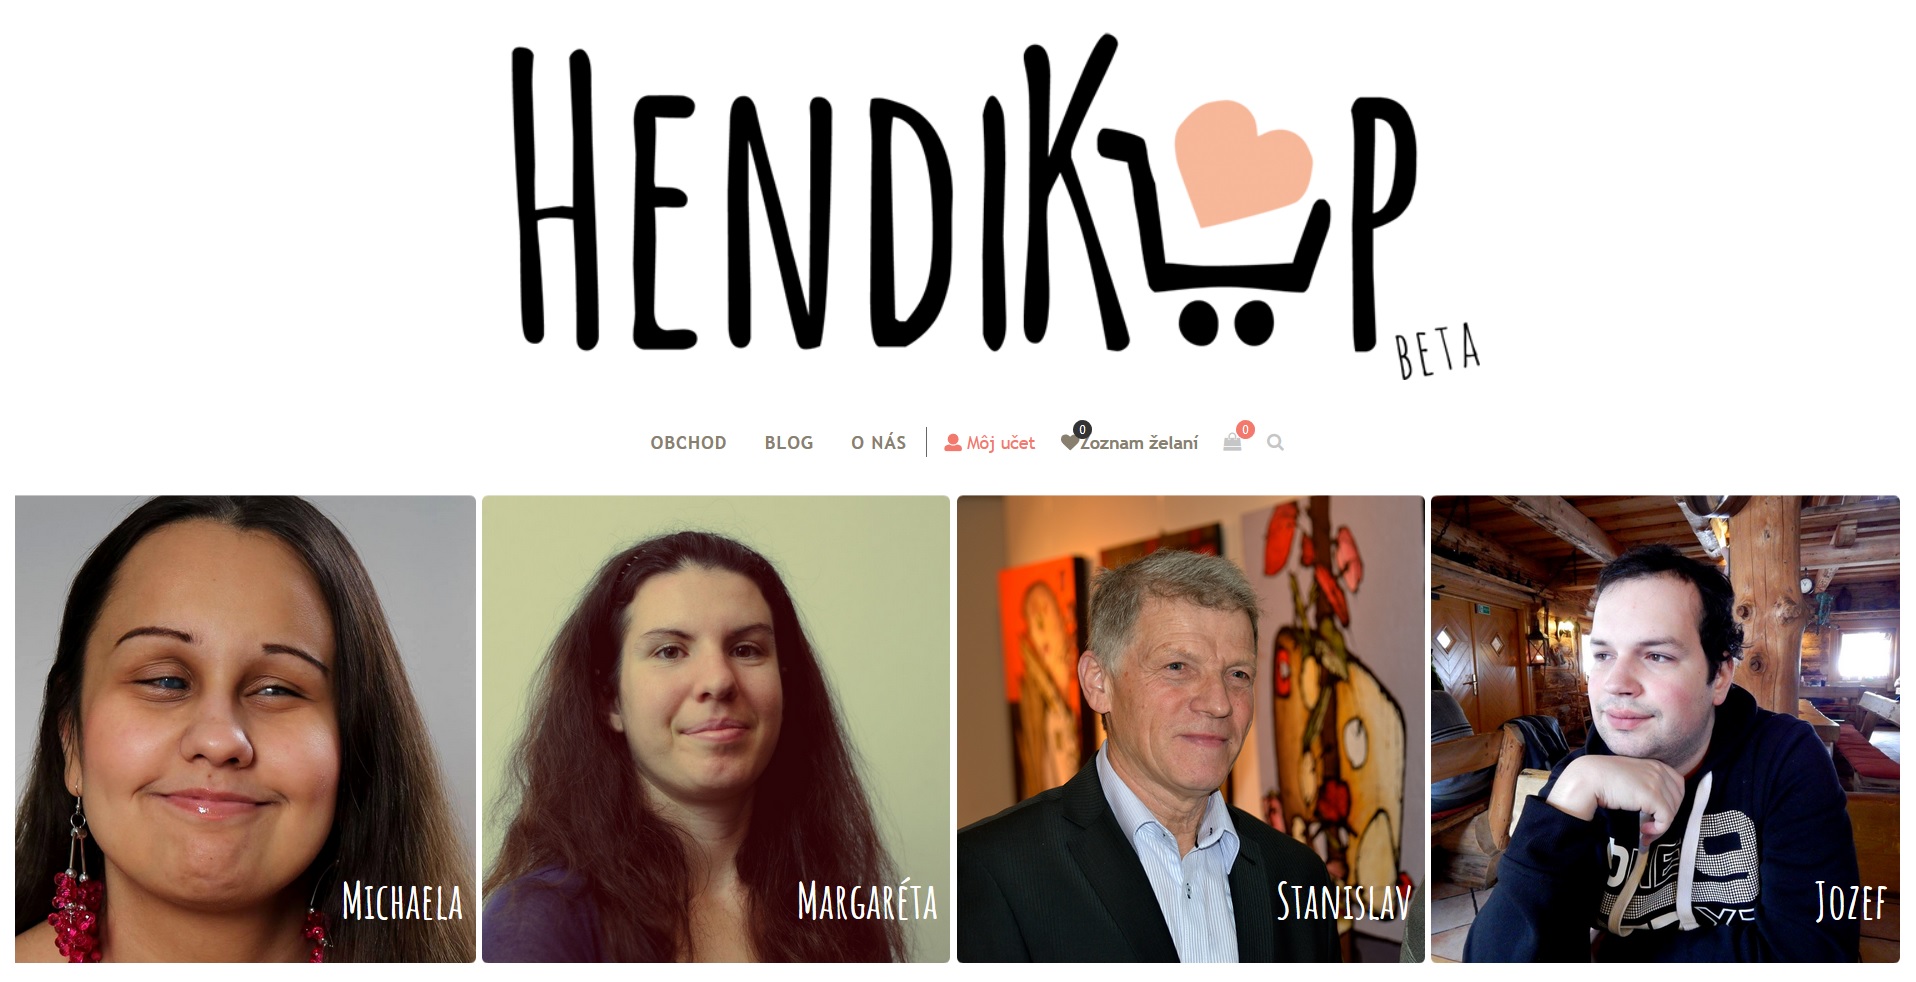 HendiKup.sk | eshop podporujúci komunitu šikovných ZŤP